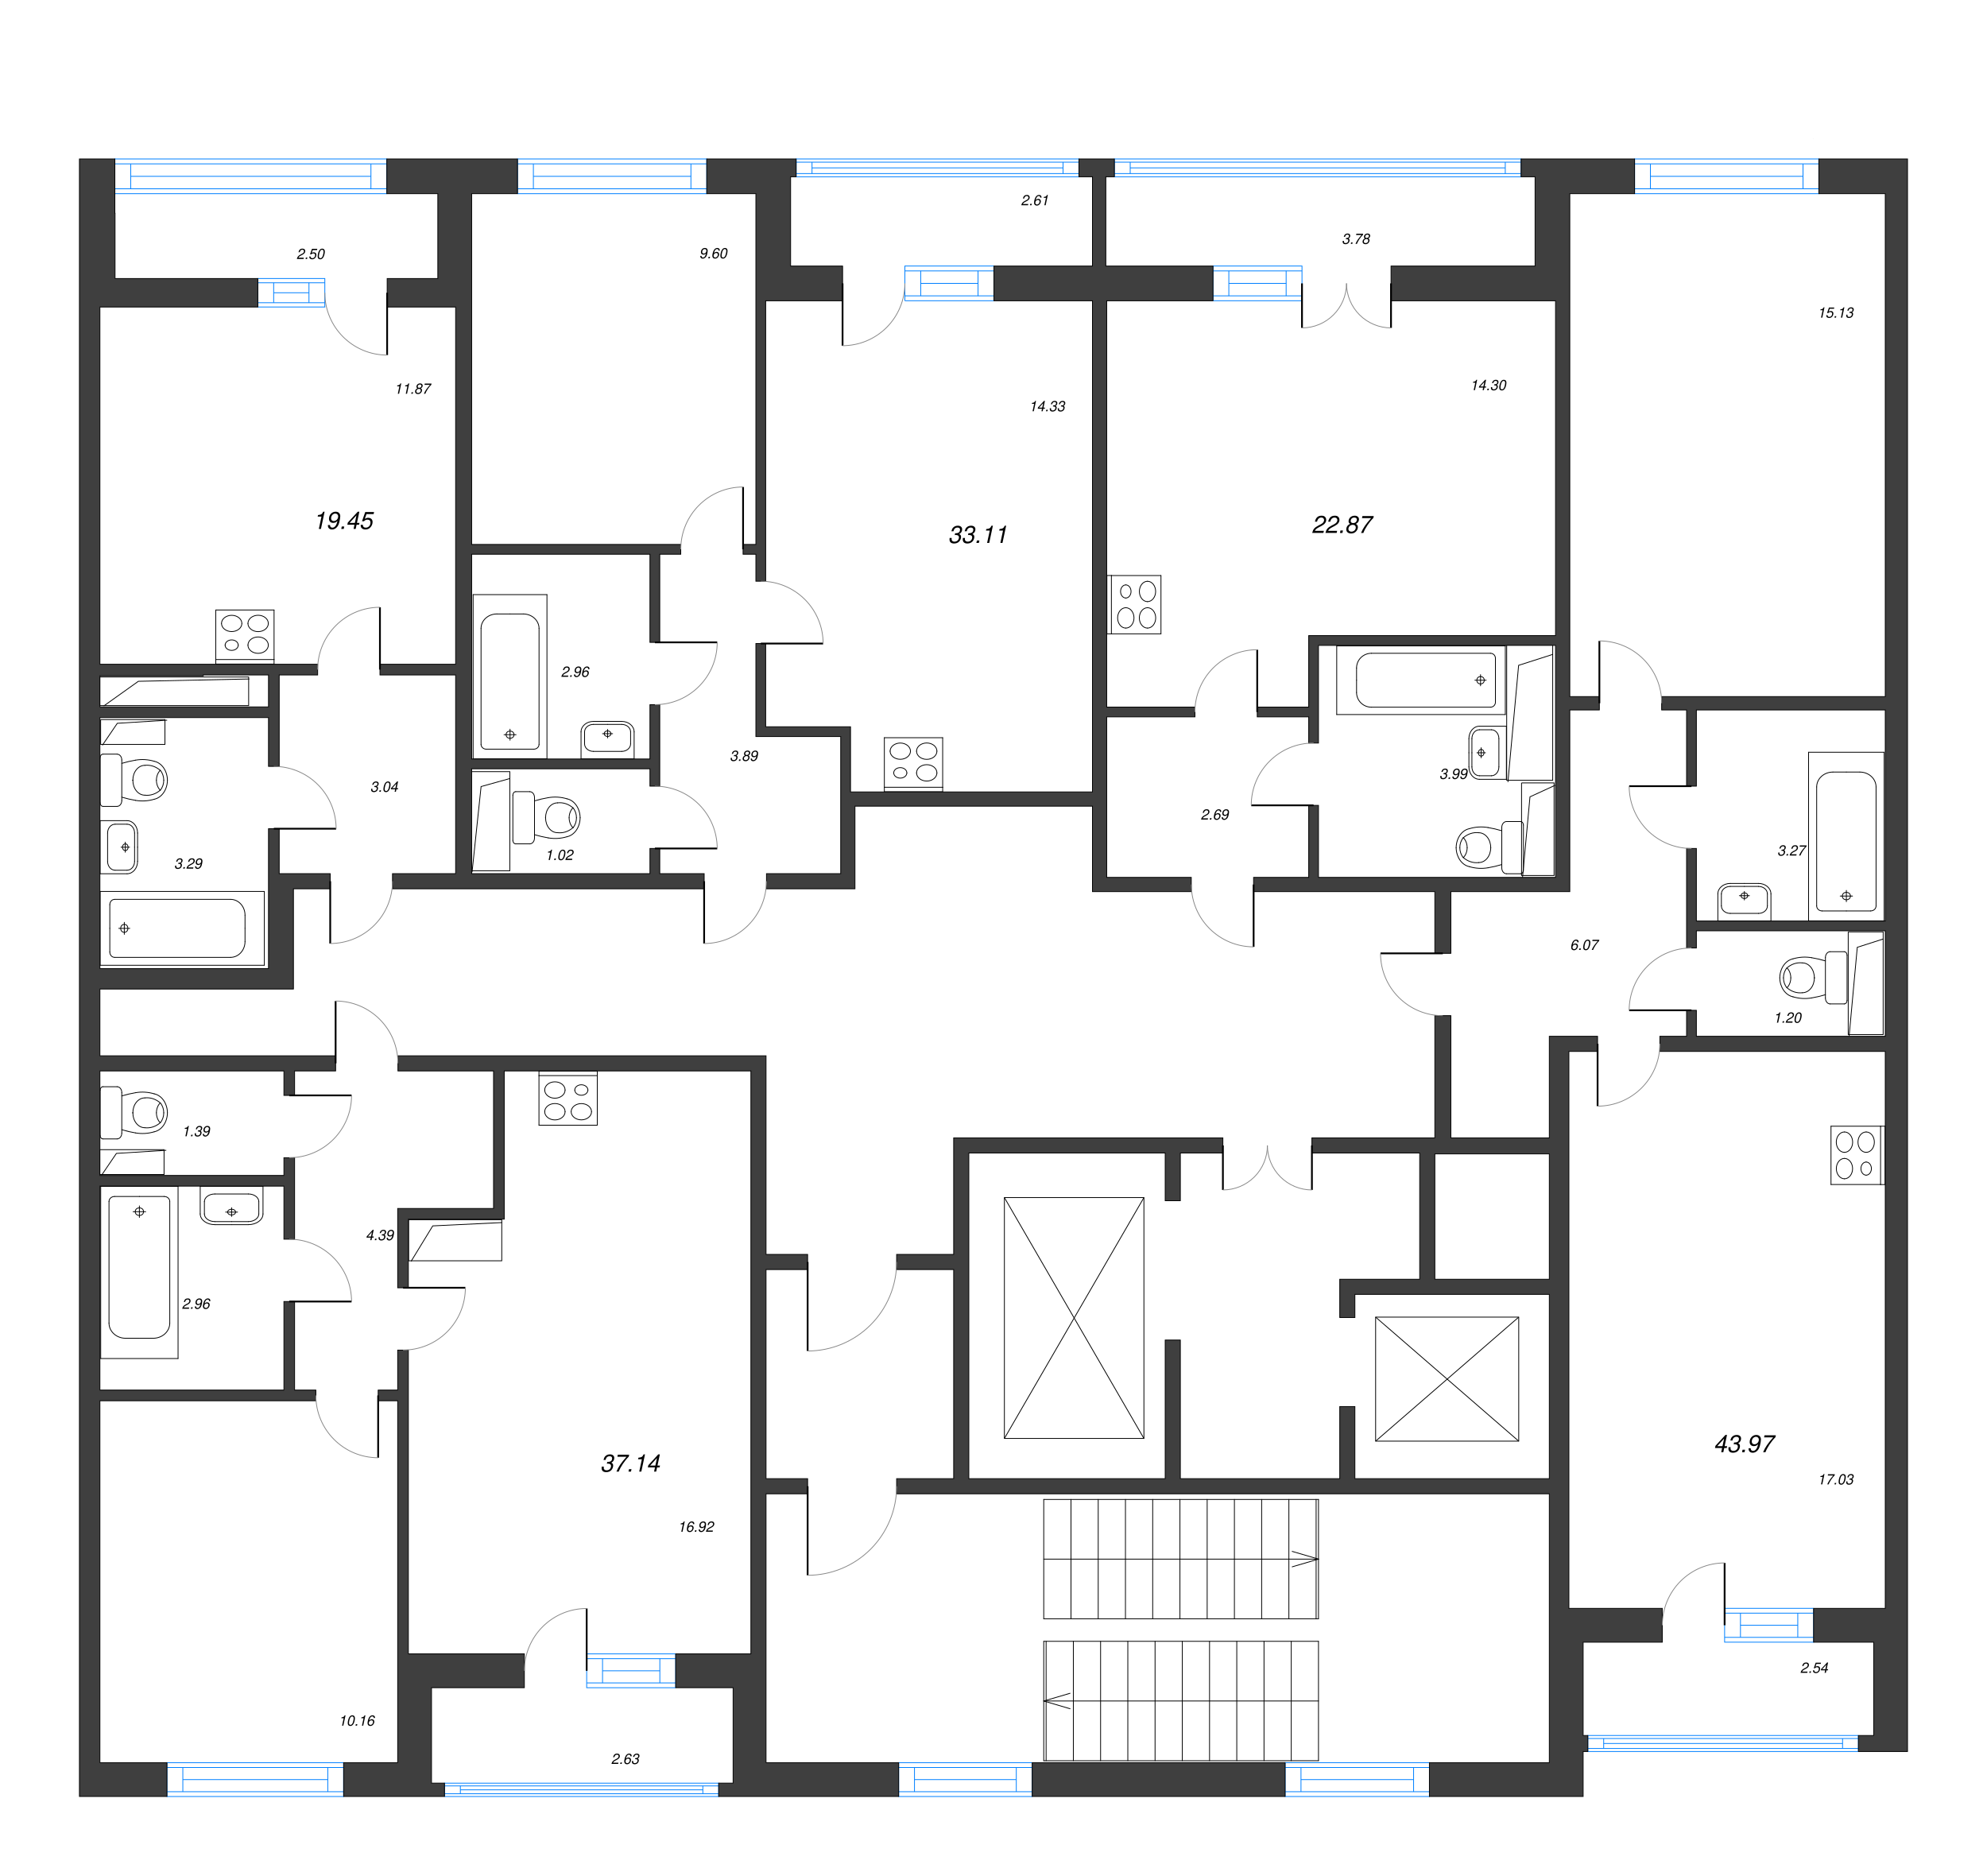 Квартира-студия, 19.45 м² в ЖК "AEROCITY" - планировка этажа